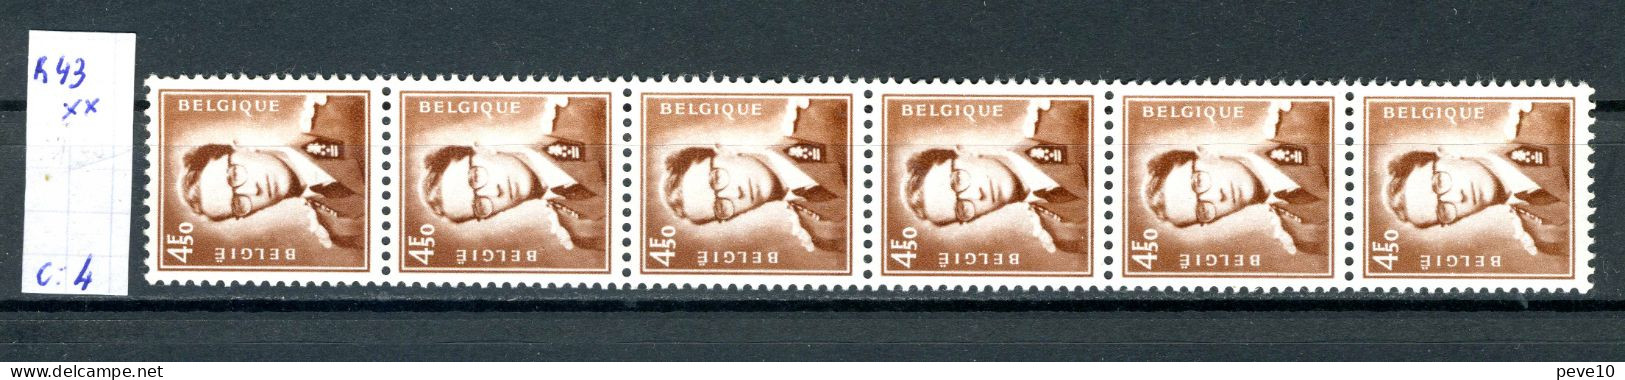 Belgique  Rouleau  R 43 Xx    Baudouin à Lunettes - Coil Stamps